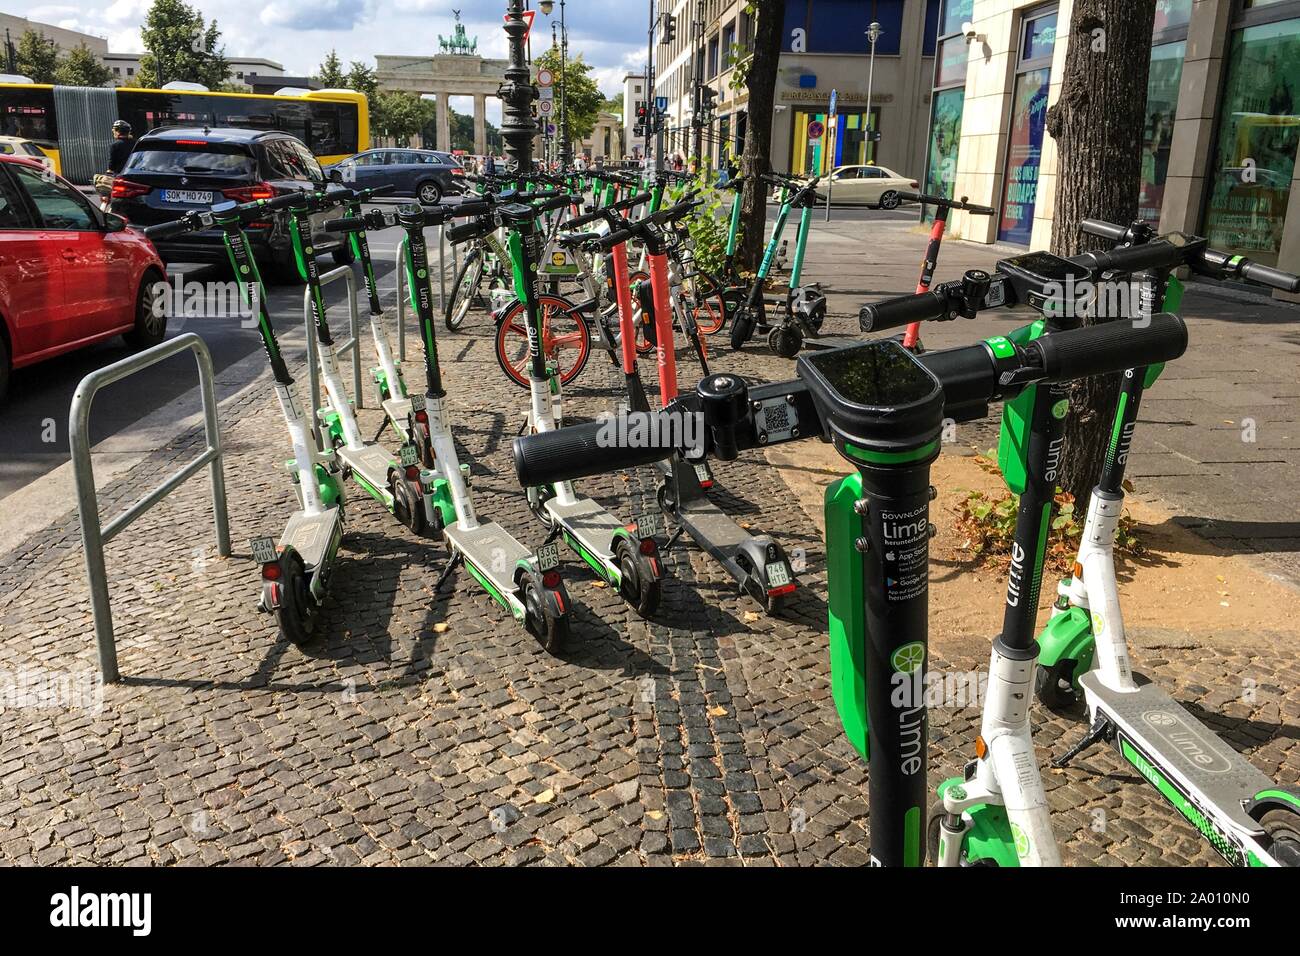 Berlín - Septiembre 08, 2019: Muchos E-scooters eléctricos de diferentes compañías compartir coche aparcado de forma caótica en una acera en Berlín, cerca de el salvado Foto de stock